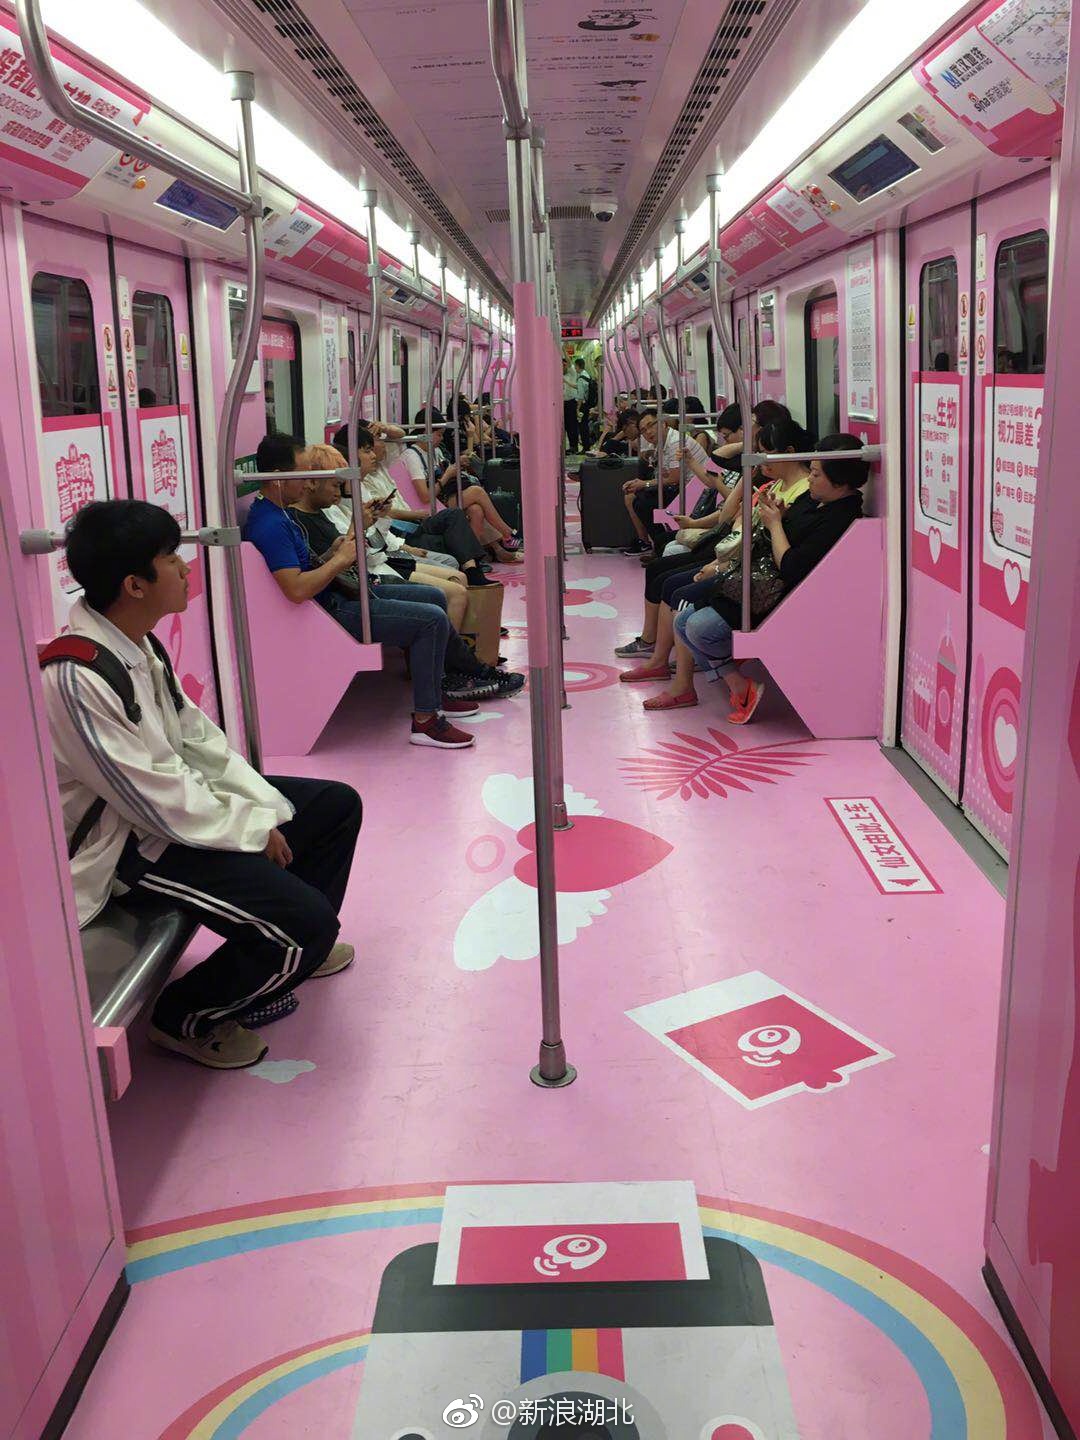 武汉高智商地铁正式发车!位于2号线 车厢内遍布烧脑神